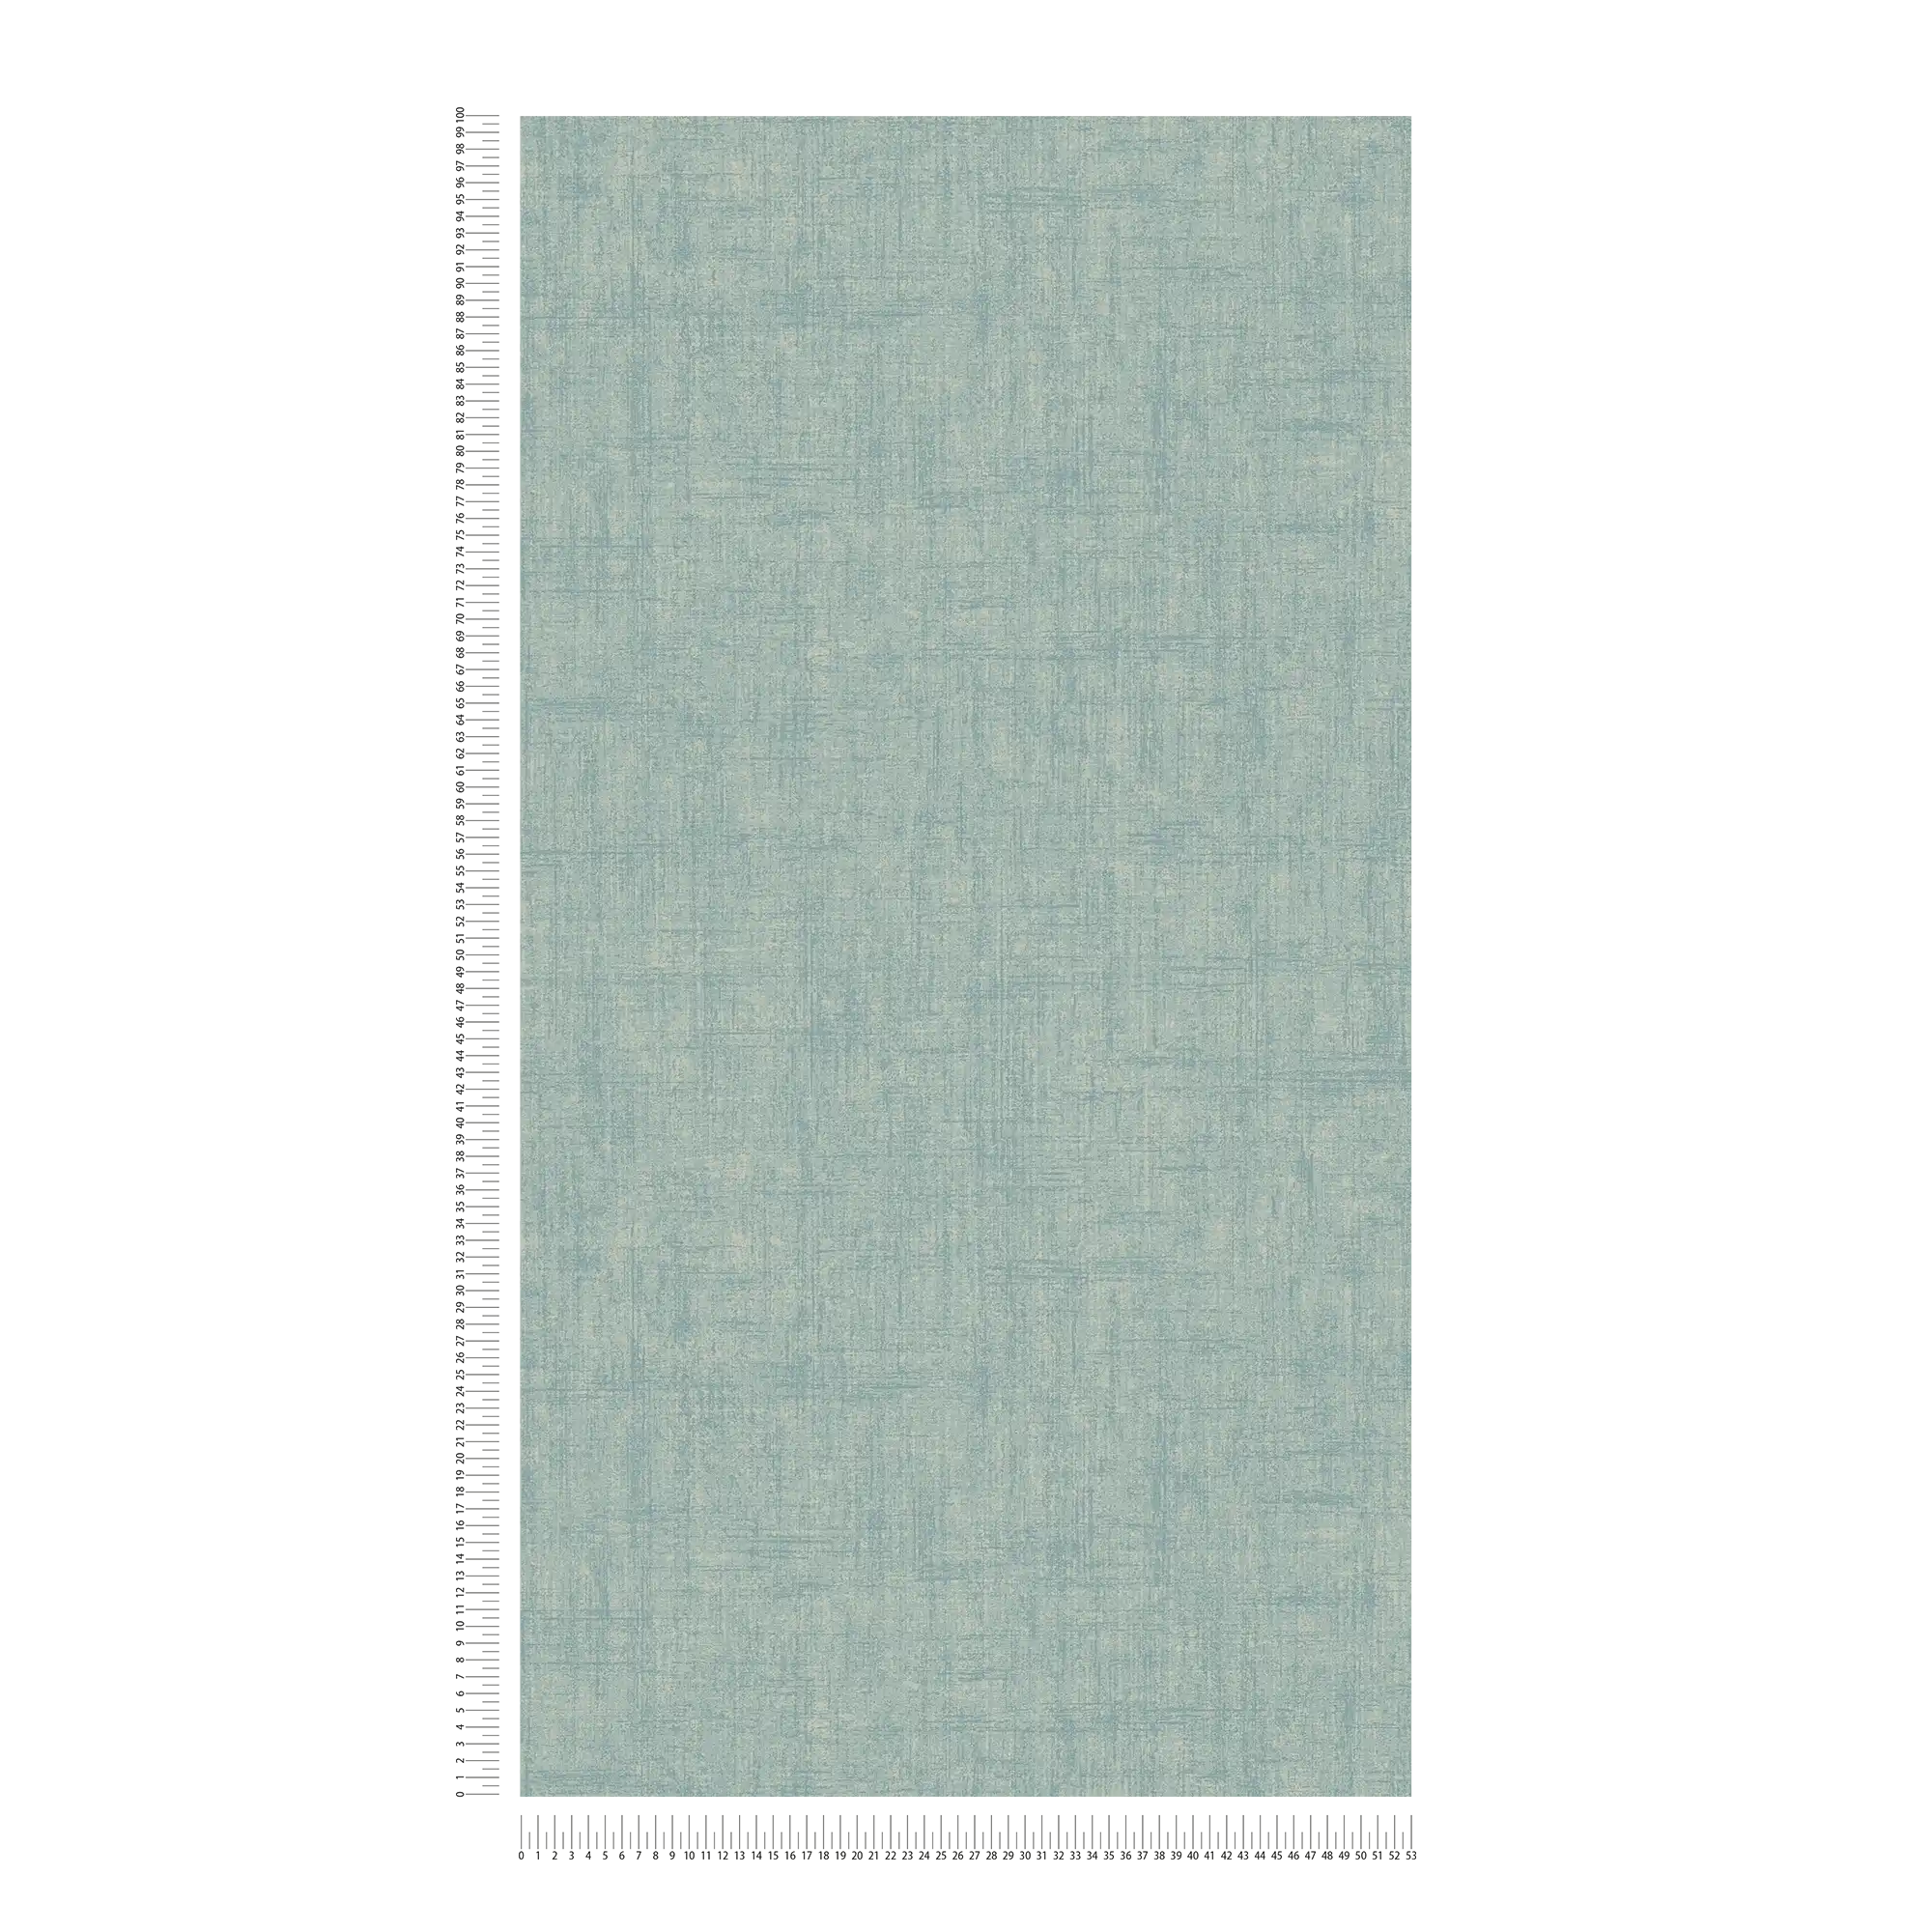             Watergroen behang, grove linnenlook - Blauw, Groen
        